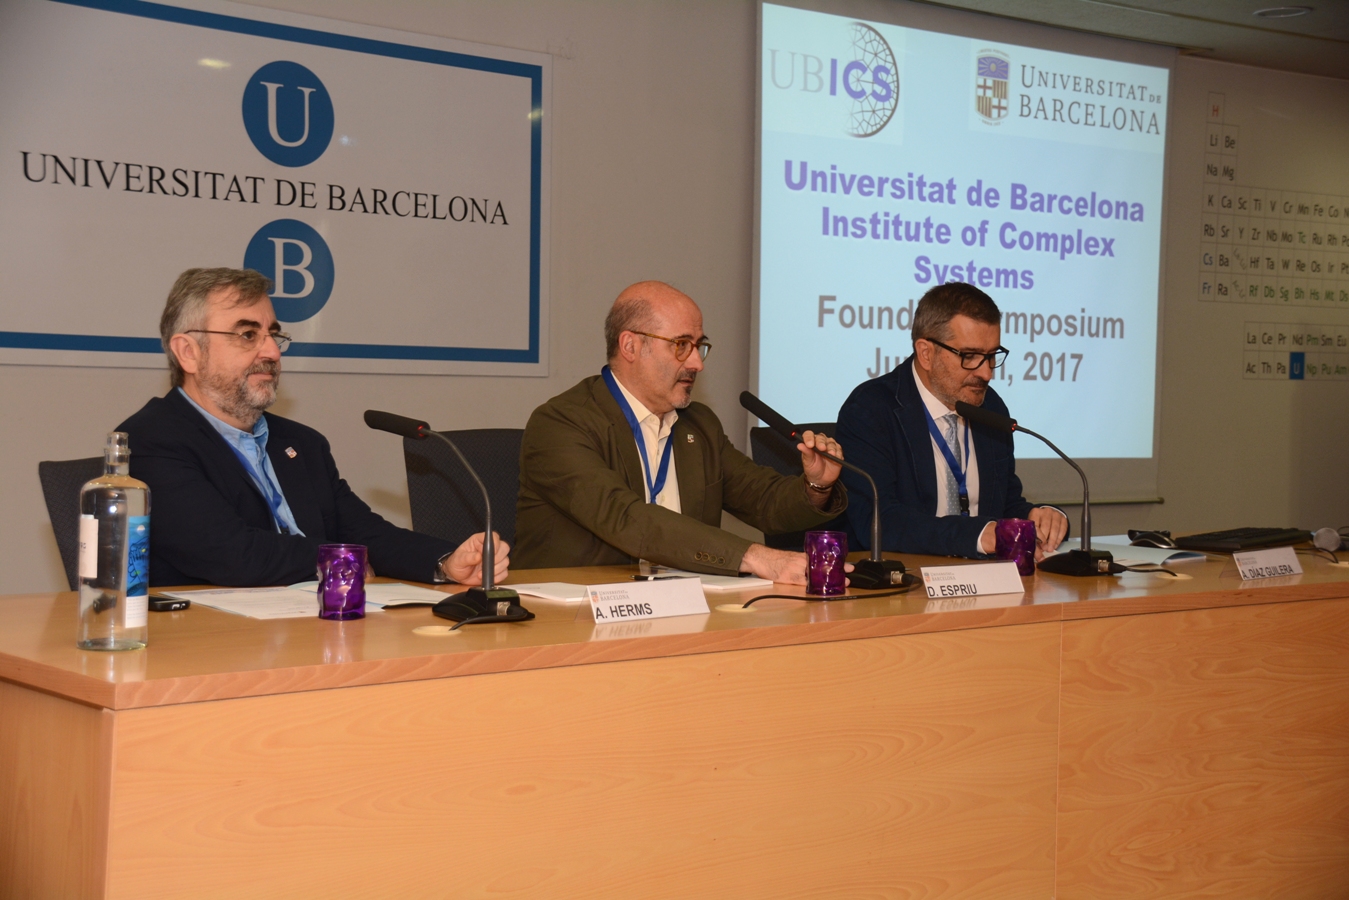 Moment de l'obertura del simposi inaugural de l'UBICS en el qual han participat Atilà Herms, degà de la Facultat de Física; Domènec Espriu,  vicerector de Recerca; i Albert Díaz-Guilera, director de l'UBICS.